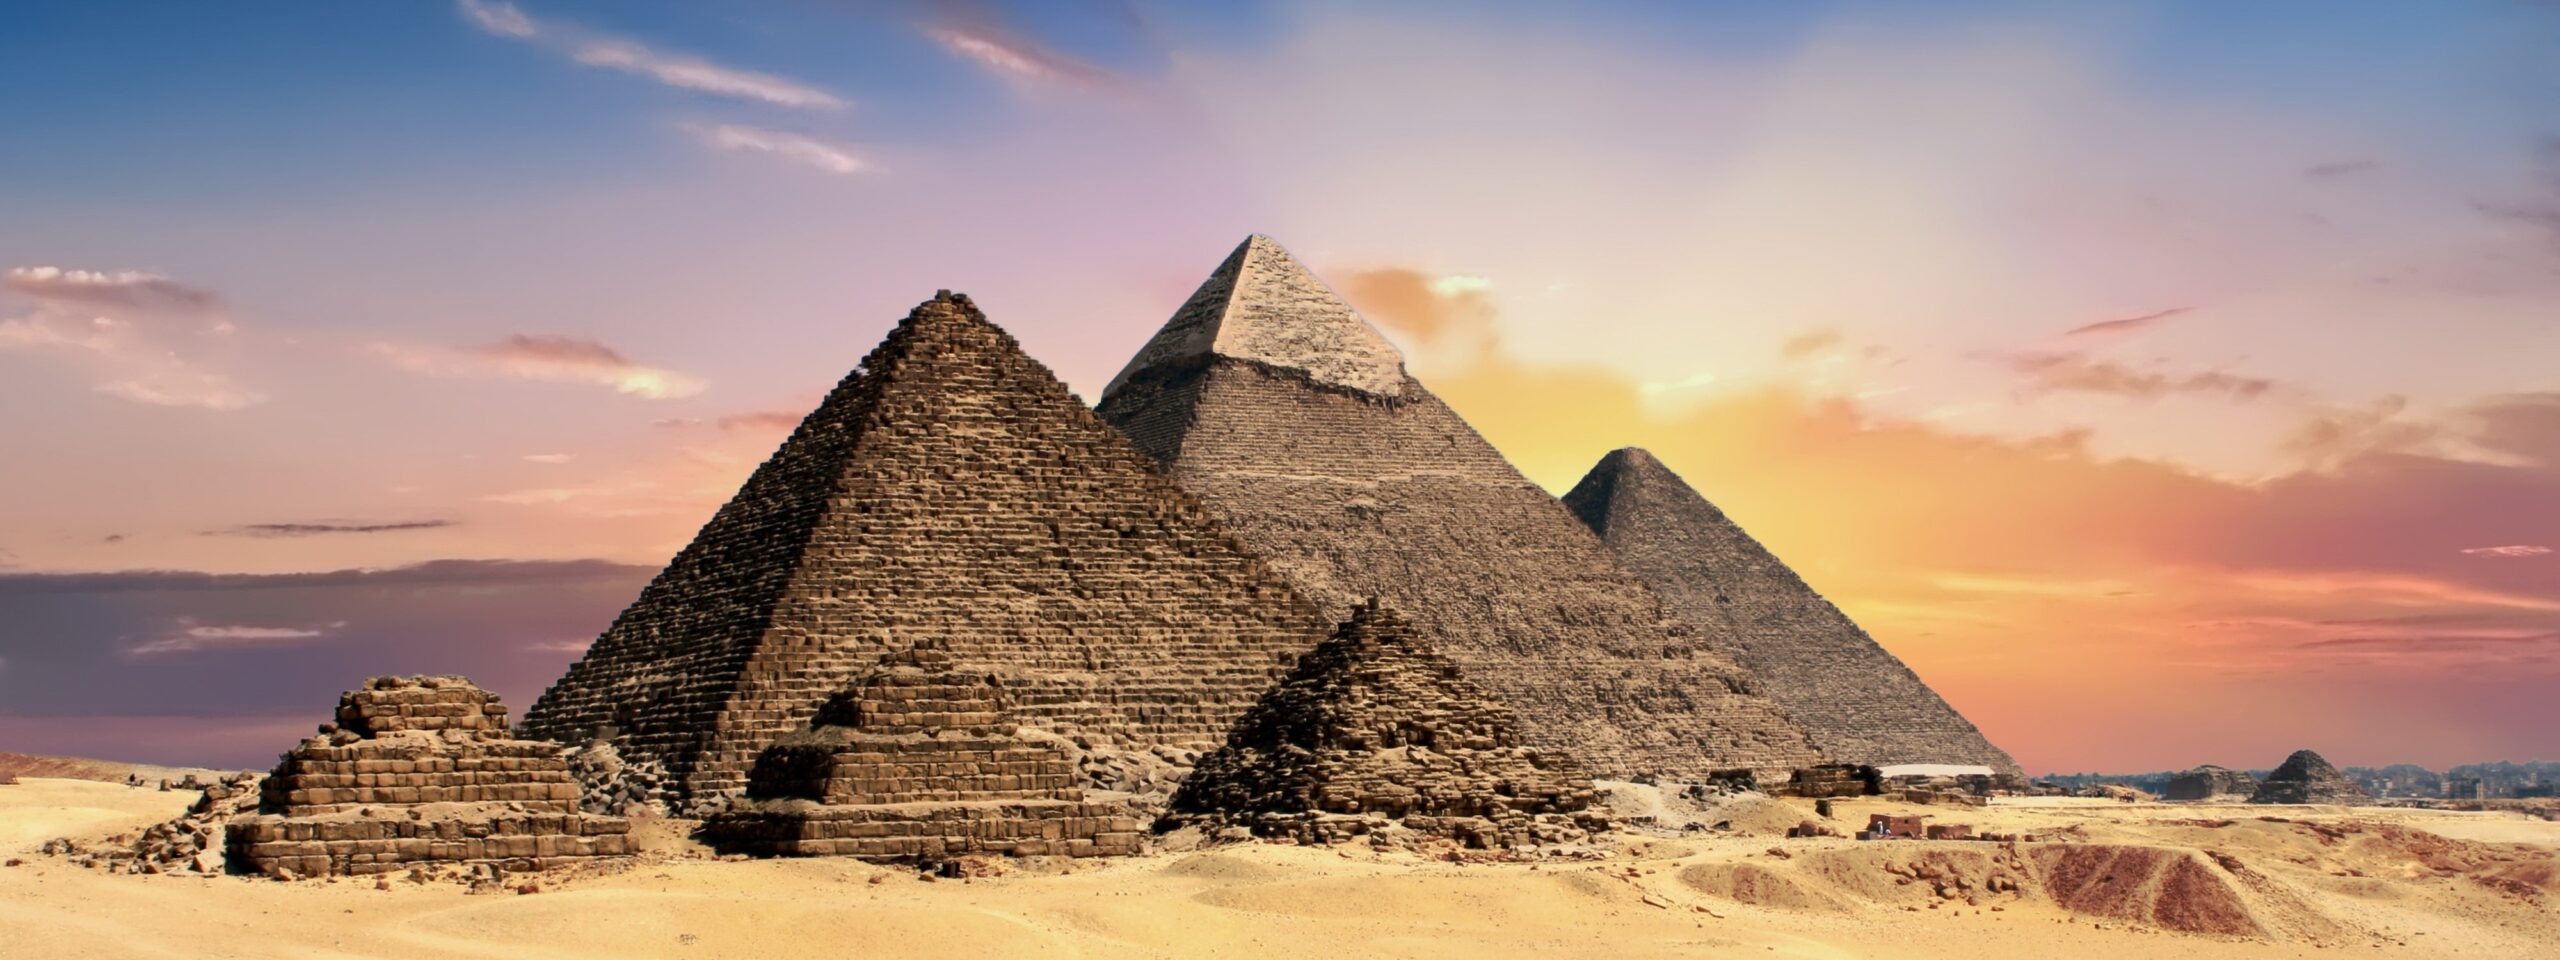 pyramids-2371501